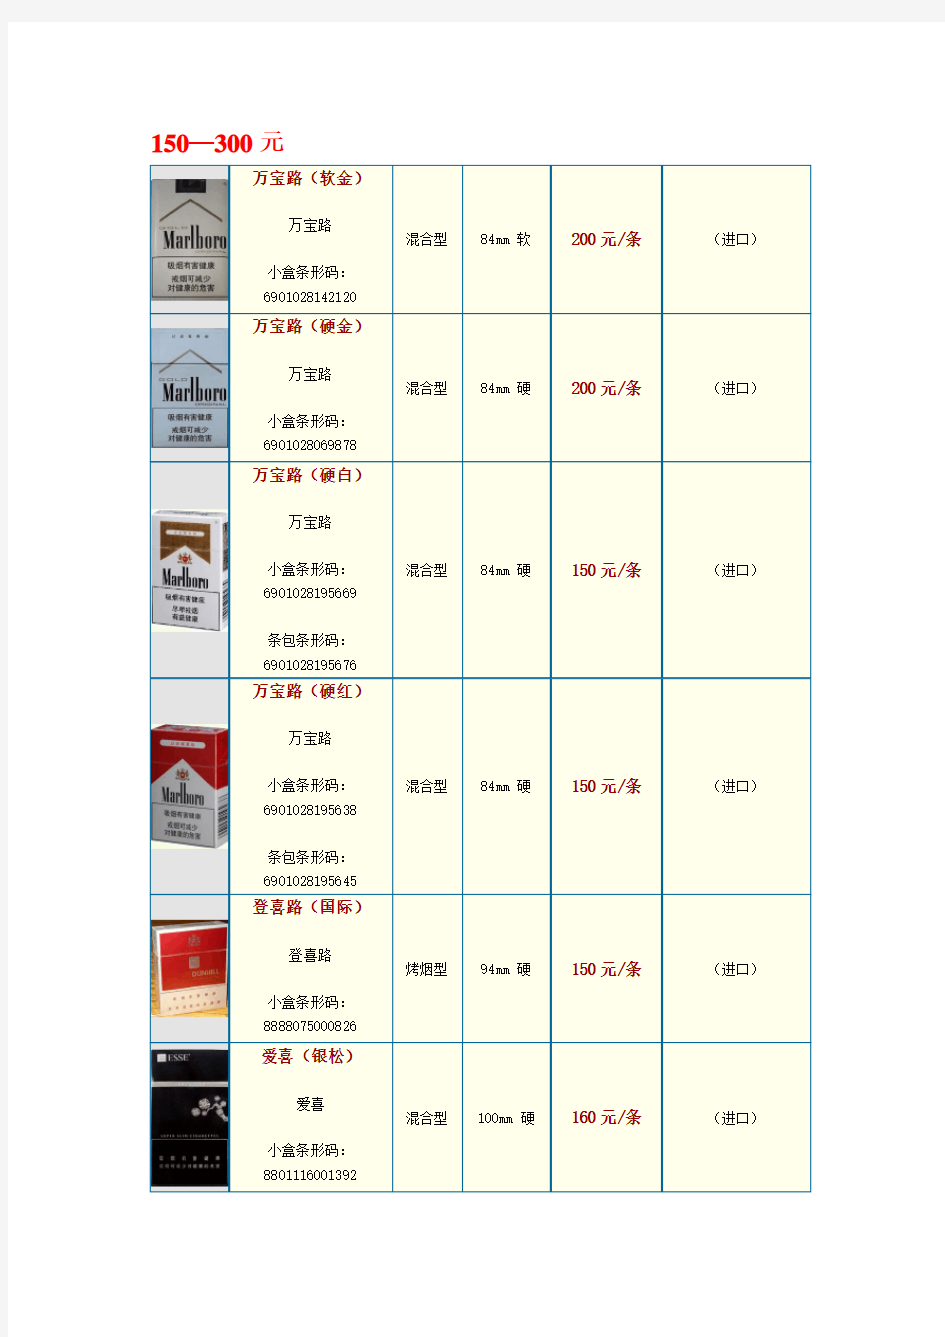 中国各类名烟价格表(150--300元并附图)